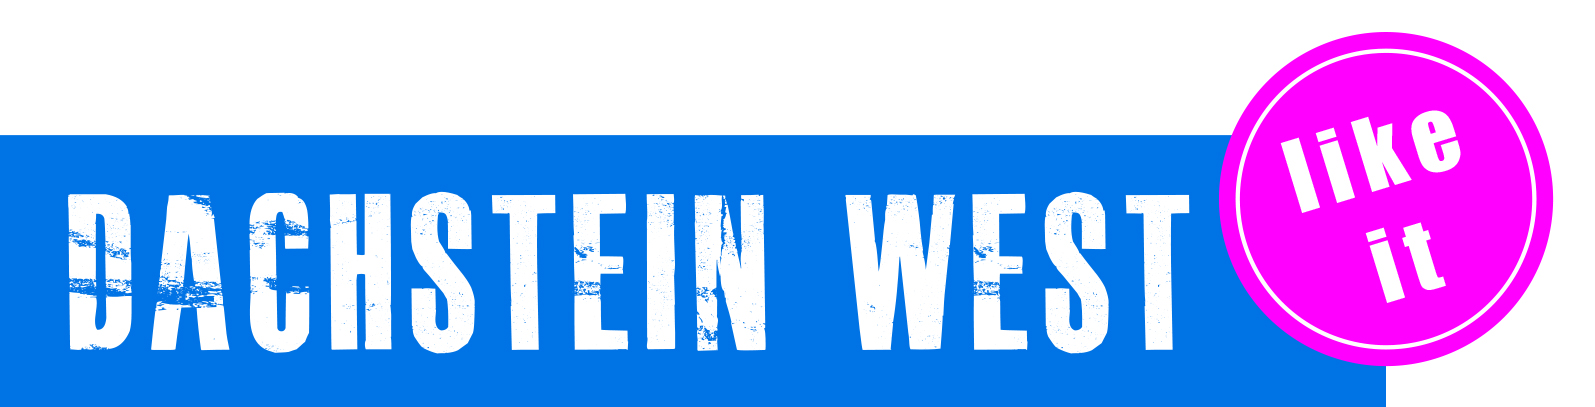 Logo Dachstein West